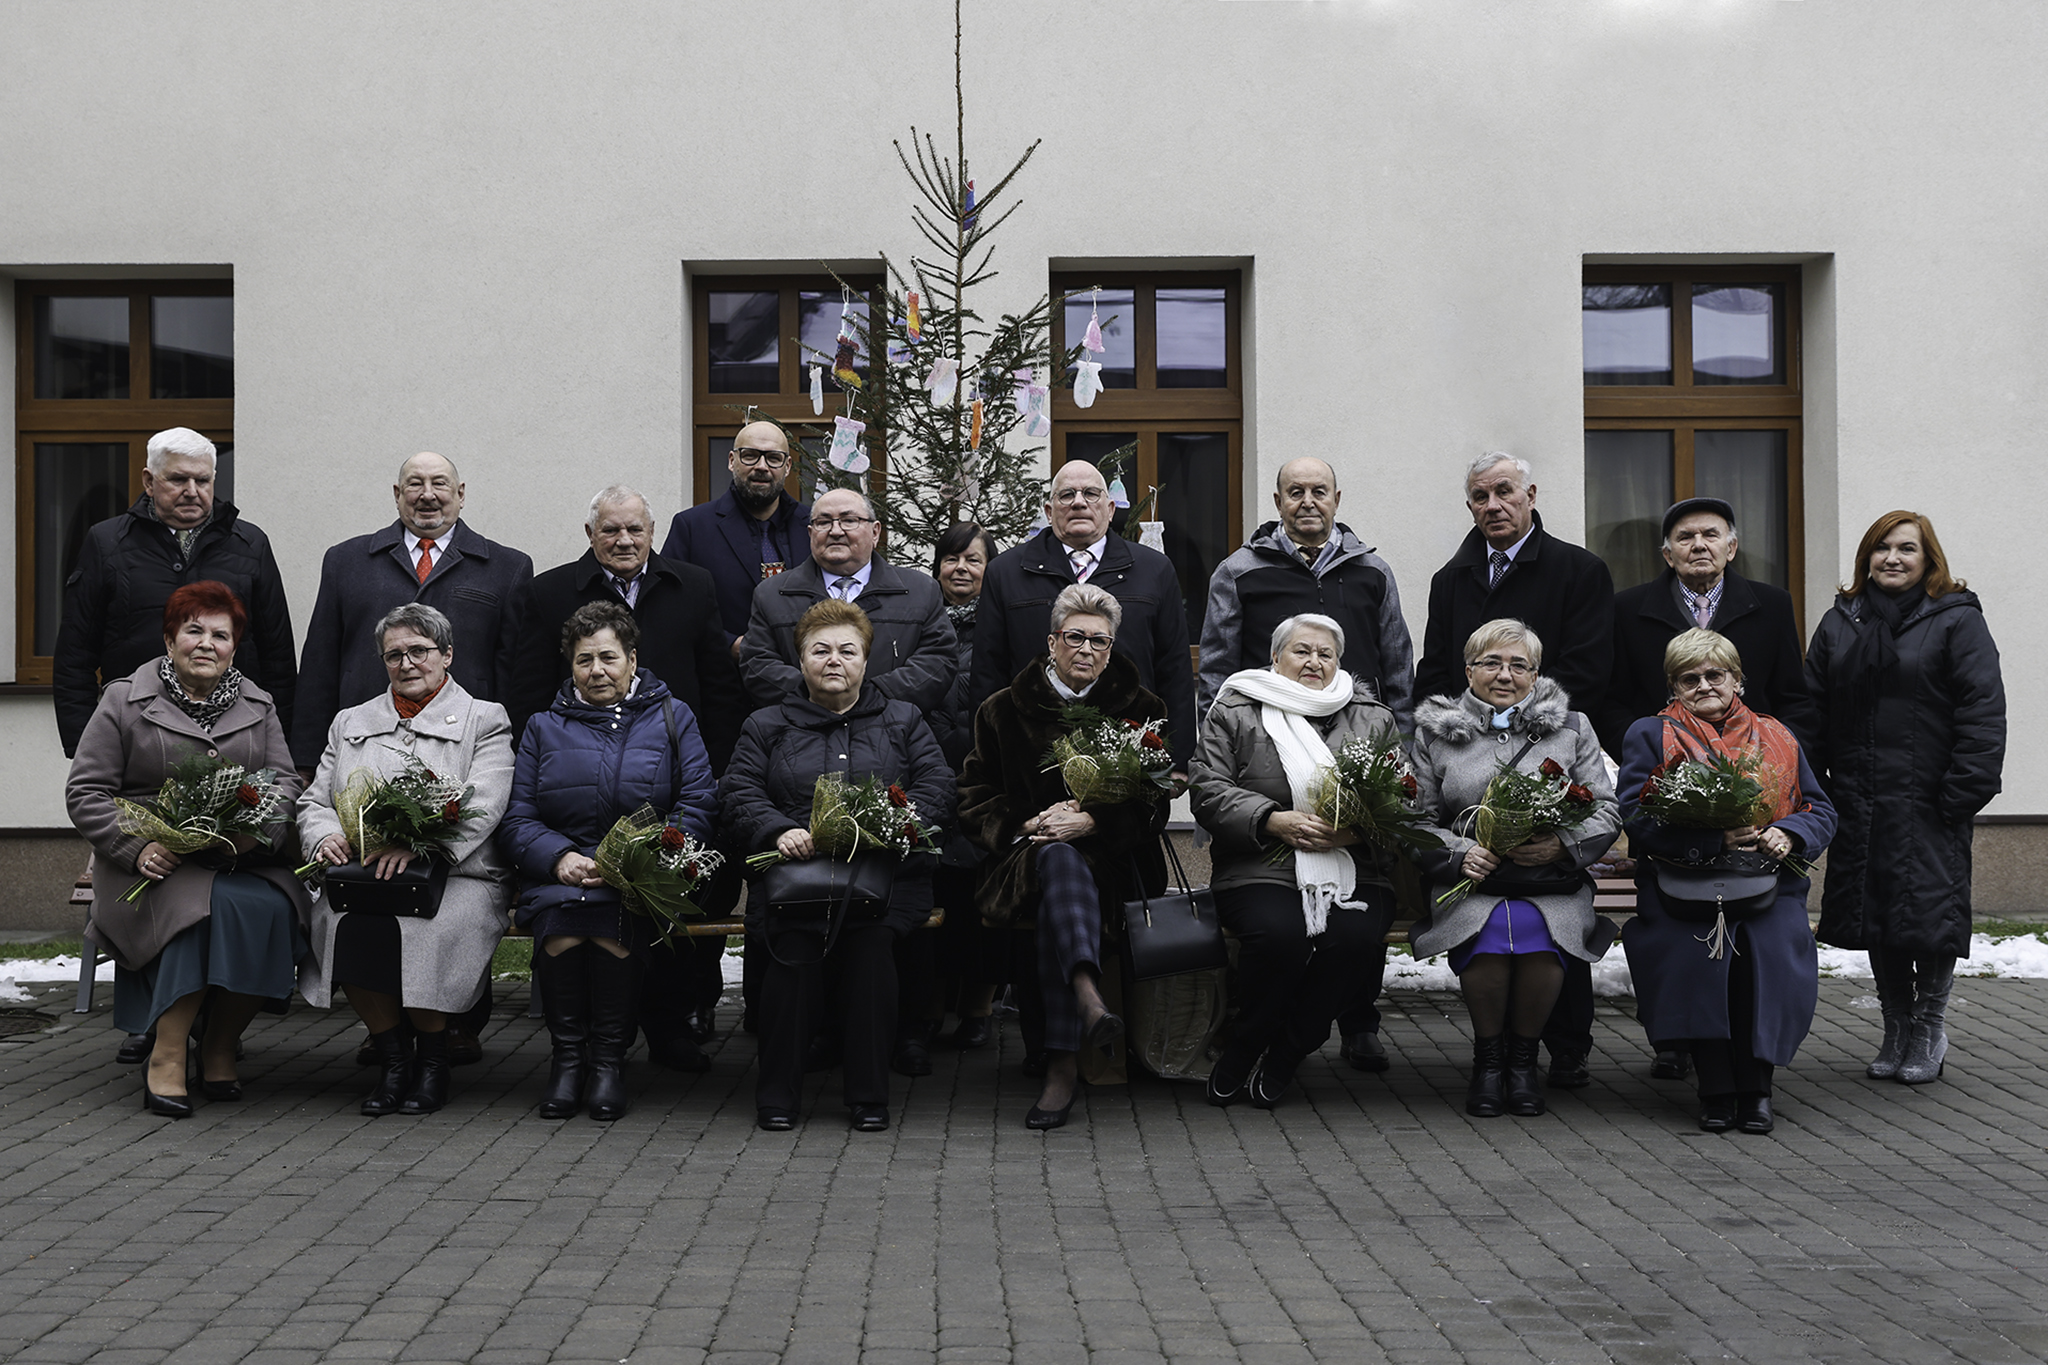 Grupa osób, kobiet i mężczyzn, przed białym budynkiem. Kobiety siedzą na krzesłach, trzymają na w rękach kwiaty. Za nimi żywa choinka